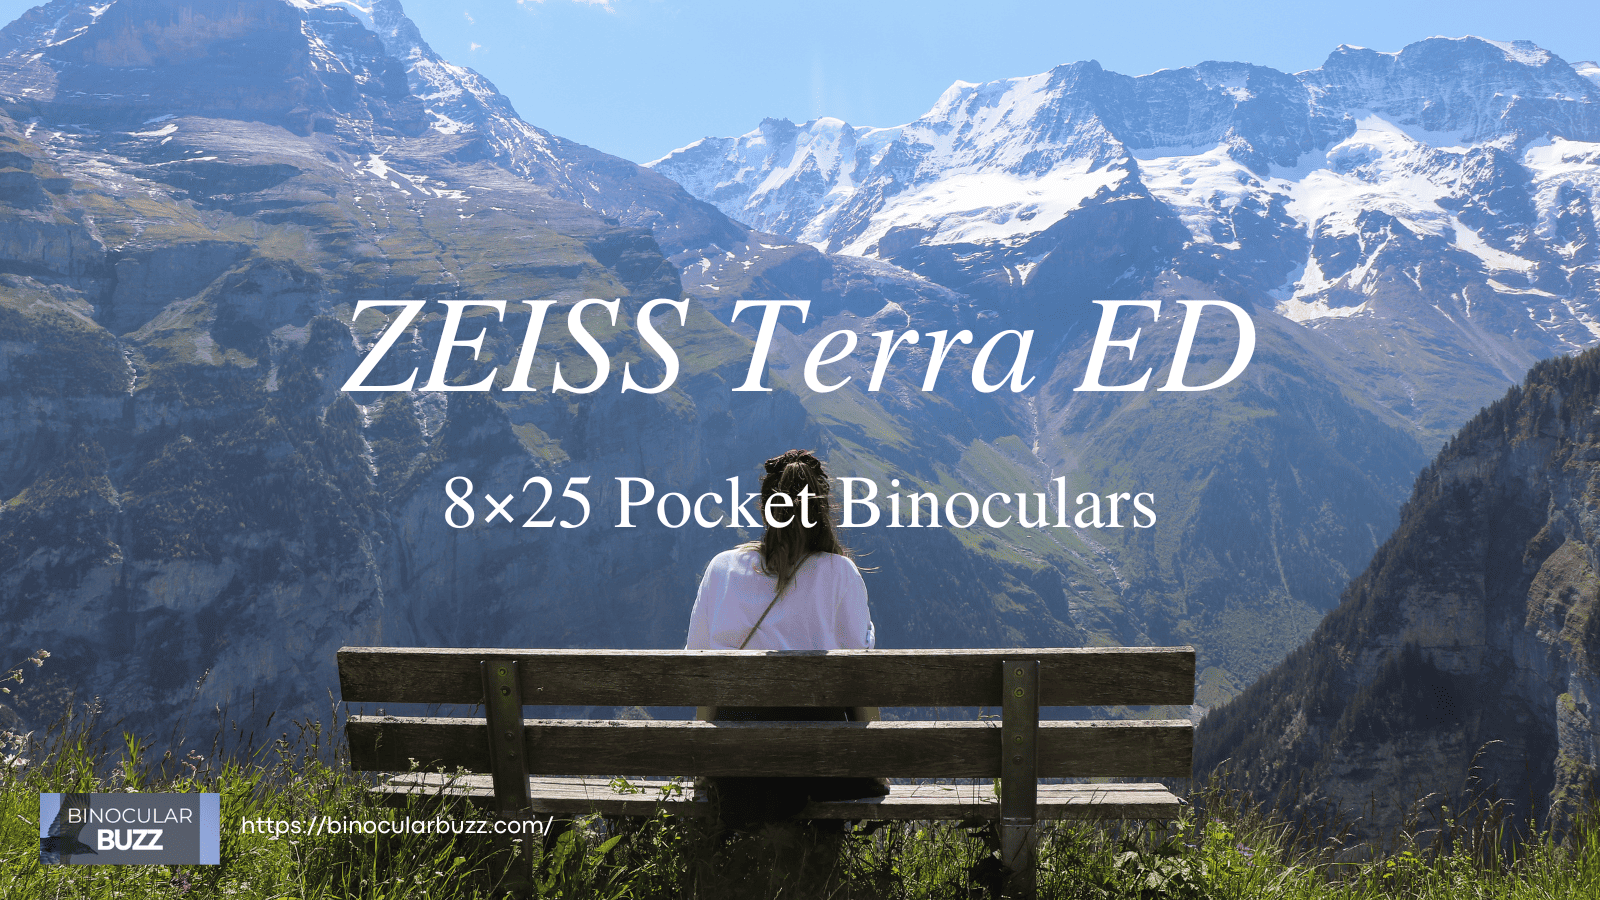 ZEISS Terra ED 8x25 Pocket Binoculars Review